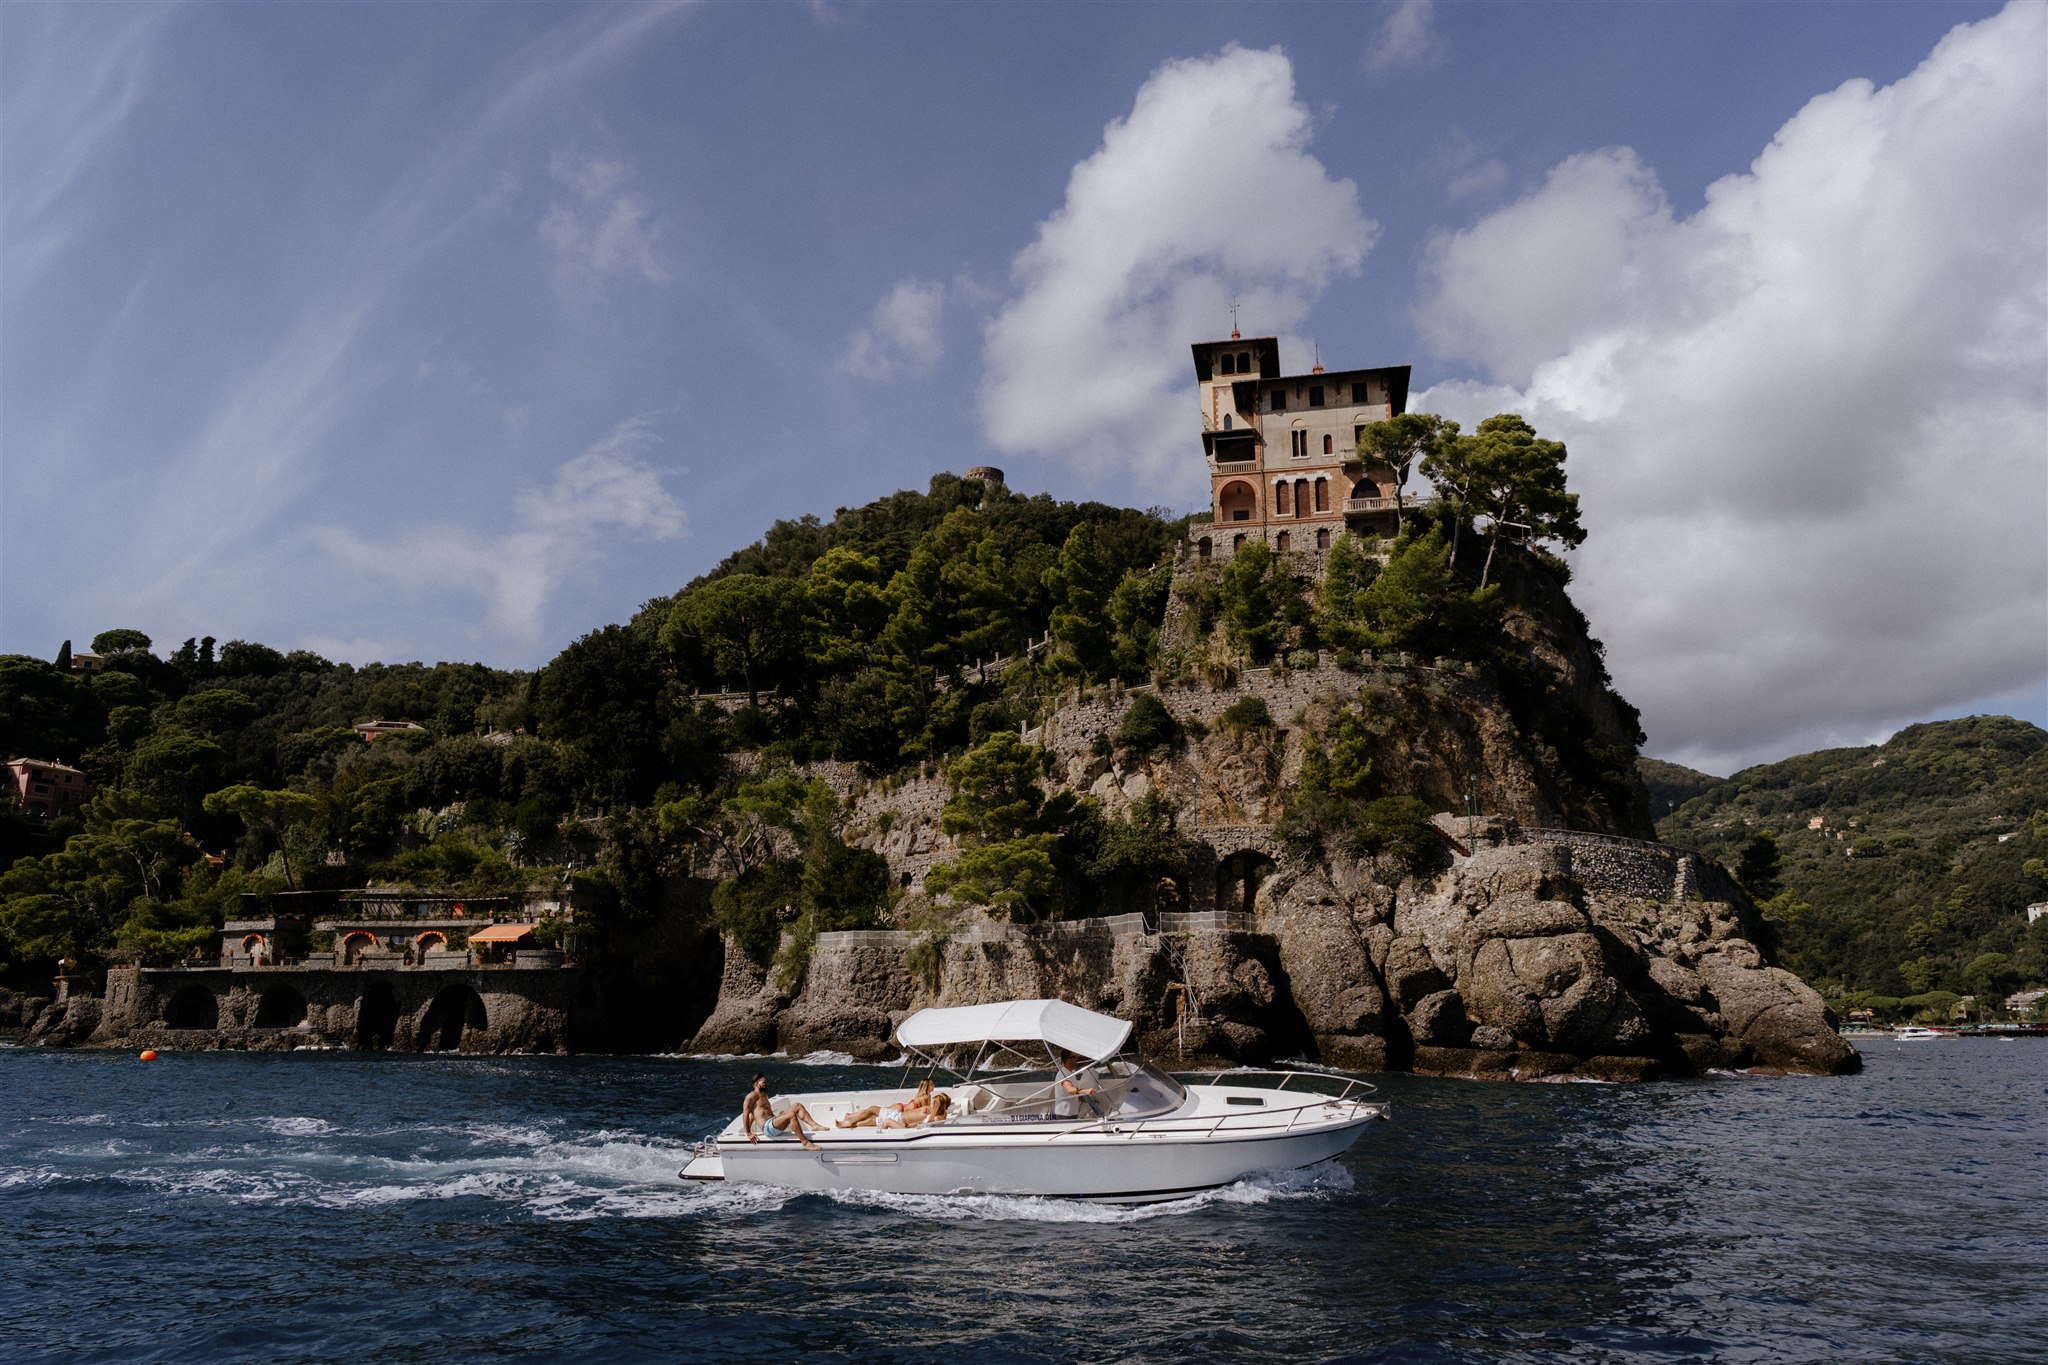 Cesare Charter Portofino - imbarcazioni per tour, charter e transfer marittimi